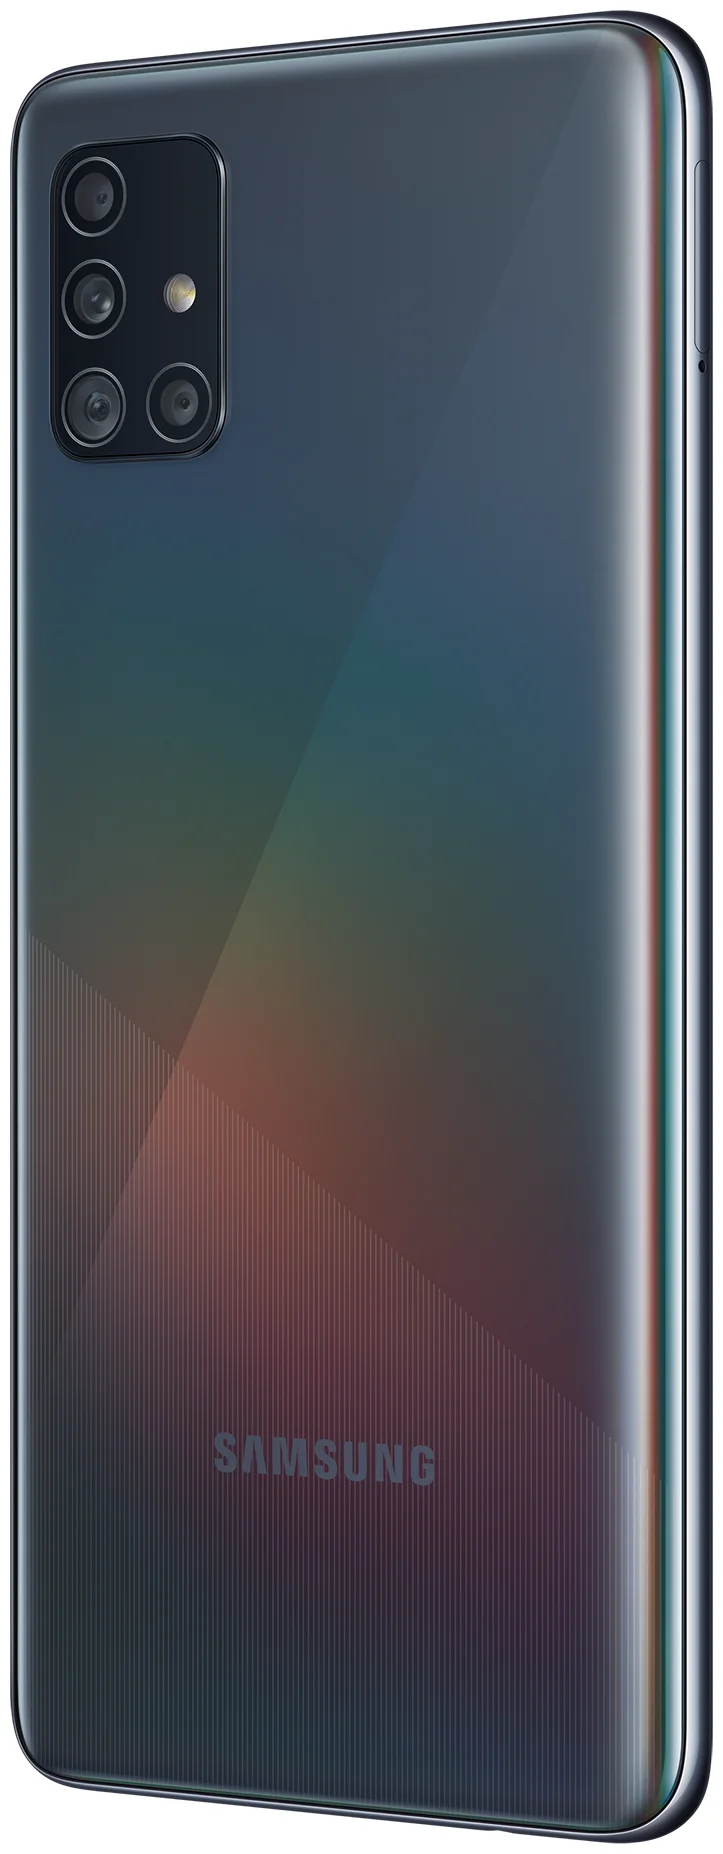 Samsung Galaxy A51 64GB - аккумулятор: 4000 мА·ч